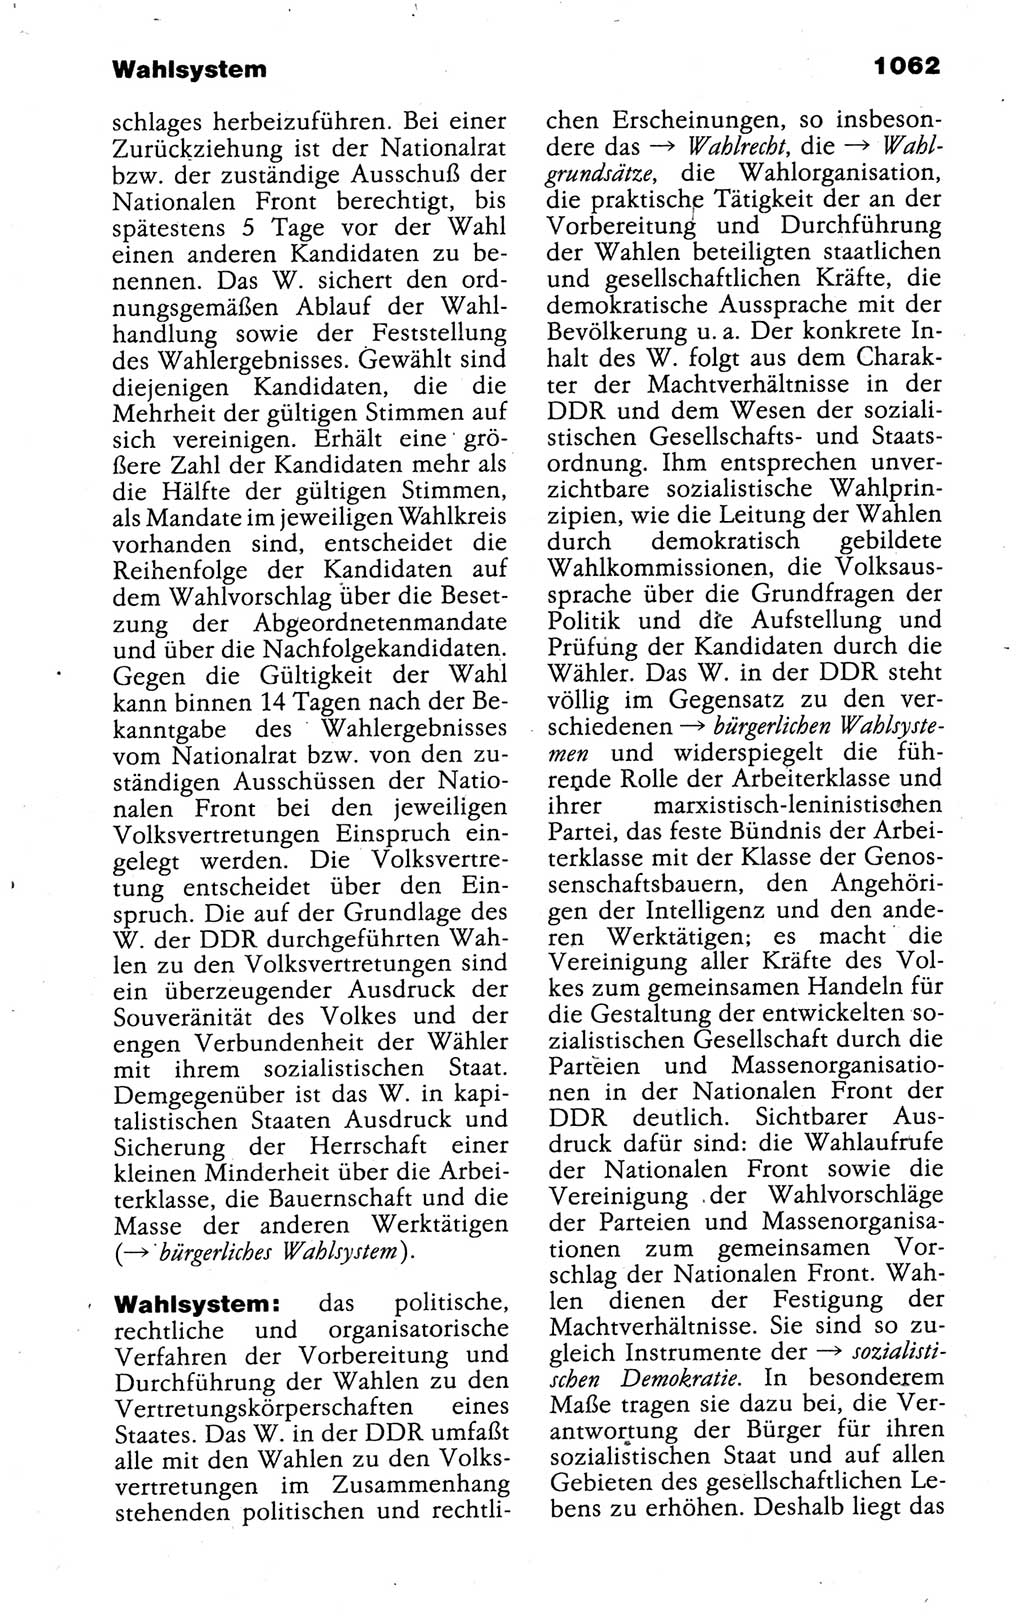 Kleines politisches Wörterbuch [Deutsche Demokratische Republik (DDR)] 1988, Seite 1062 (Kl. pol. Wb. DDR 1988, S. 1062)